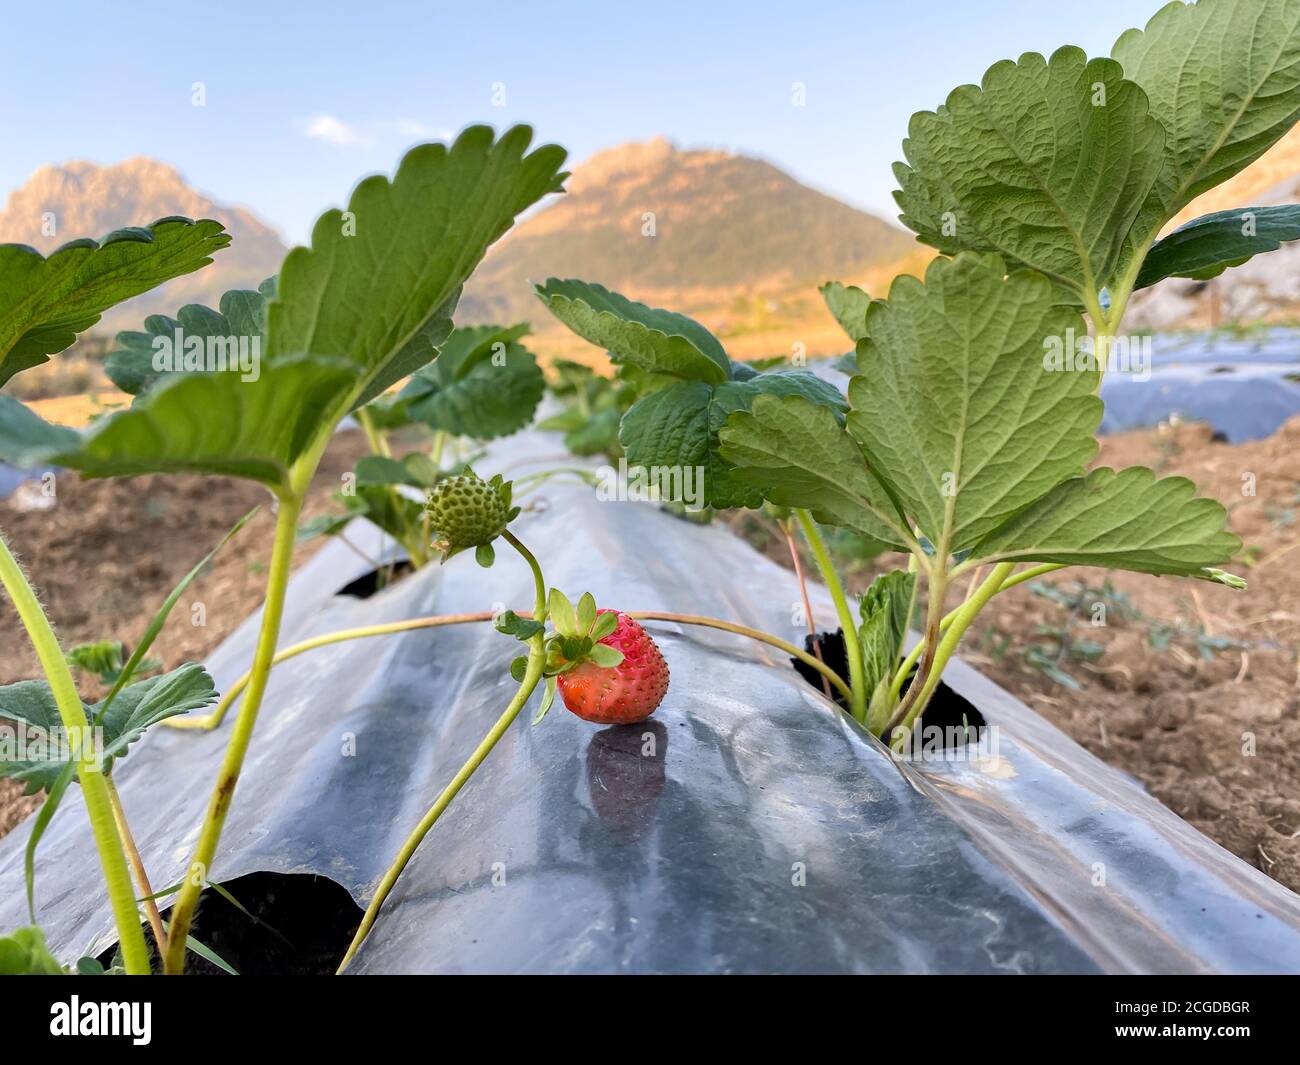 Erdbeerpflanzen werden in Reihen mit schwarzem Kunststoff gepflanzt, der sie schützt. Tropfbewässerung für Erdbeeren. Stockfoto